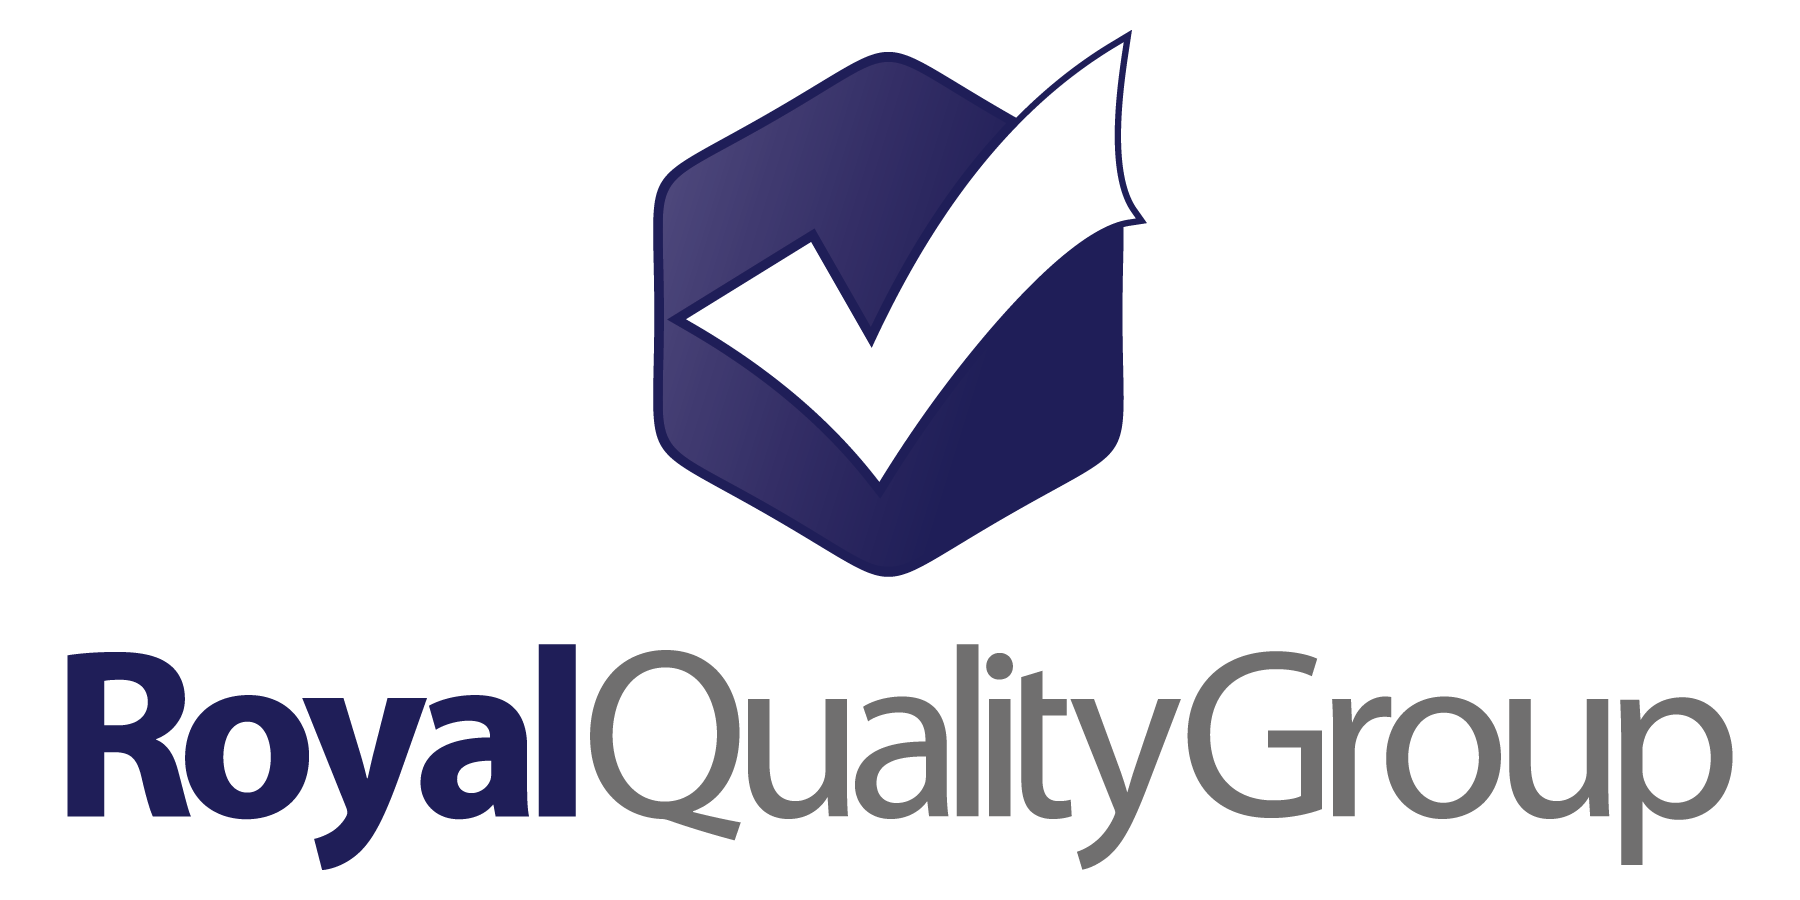 Royal Quality Group